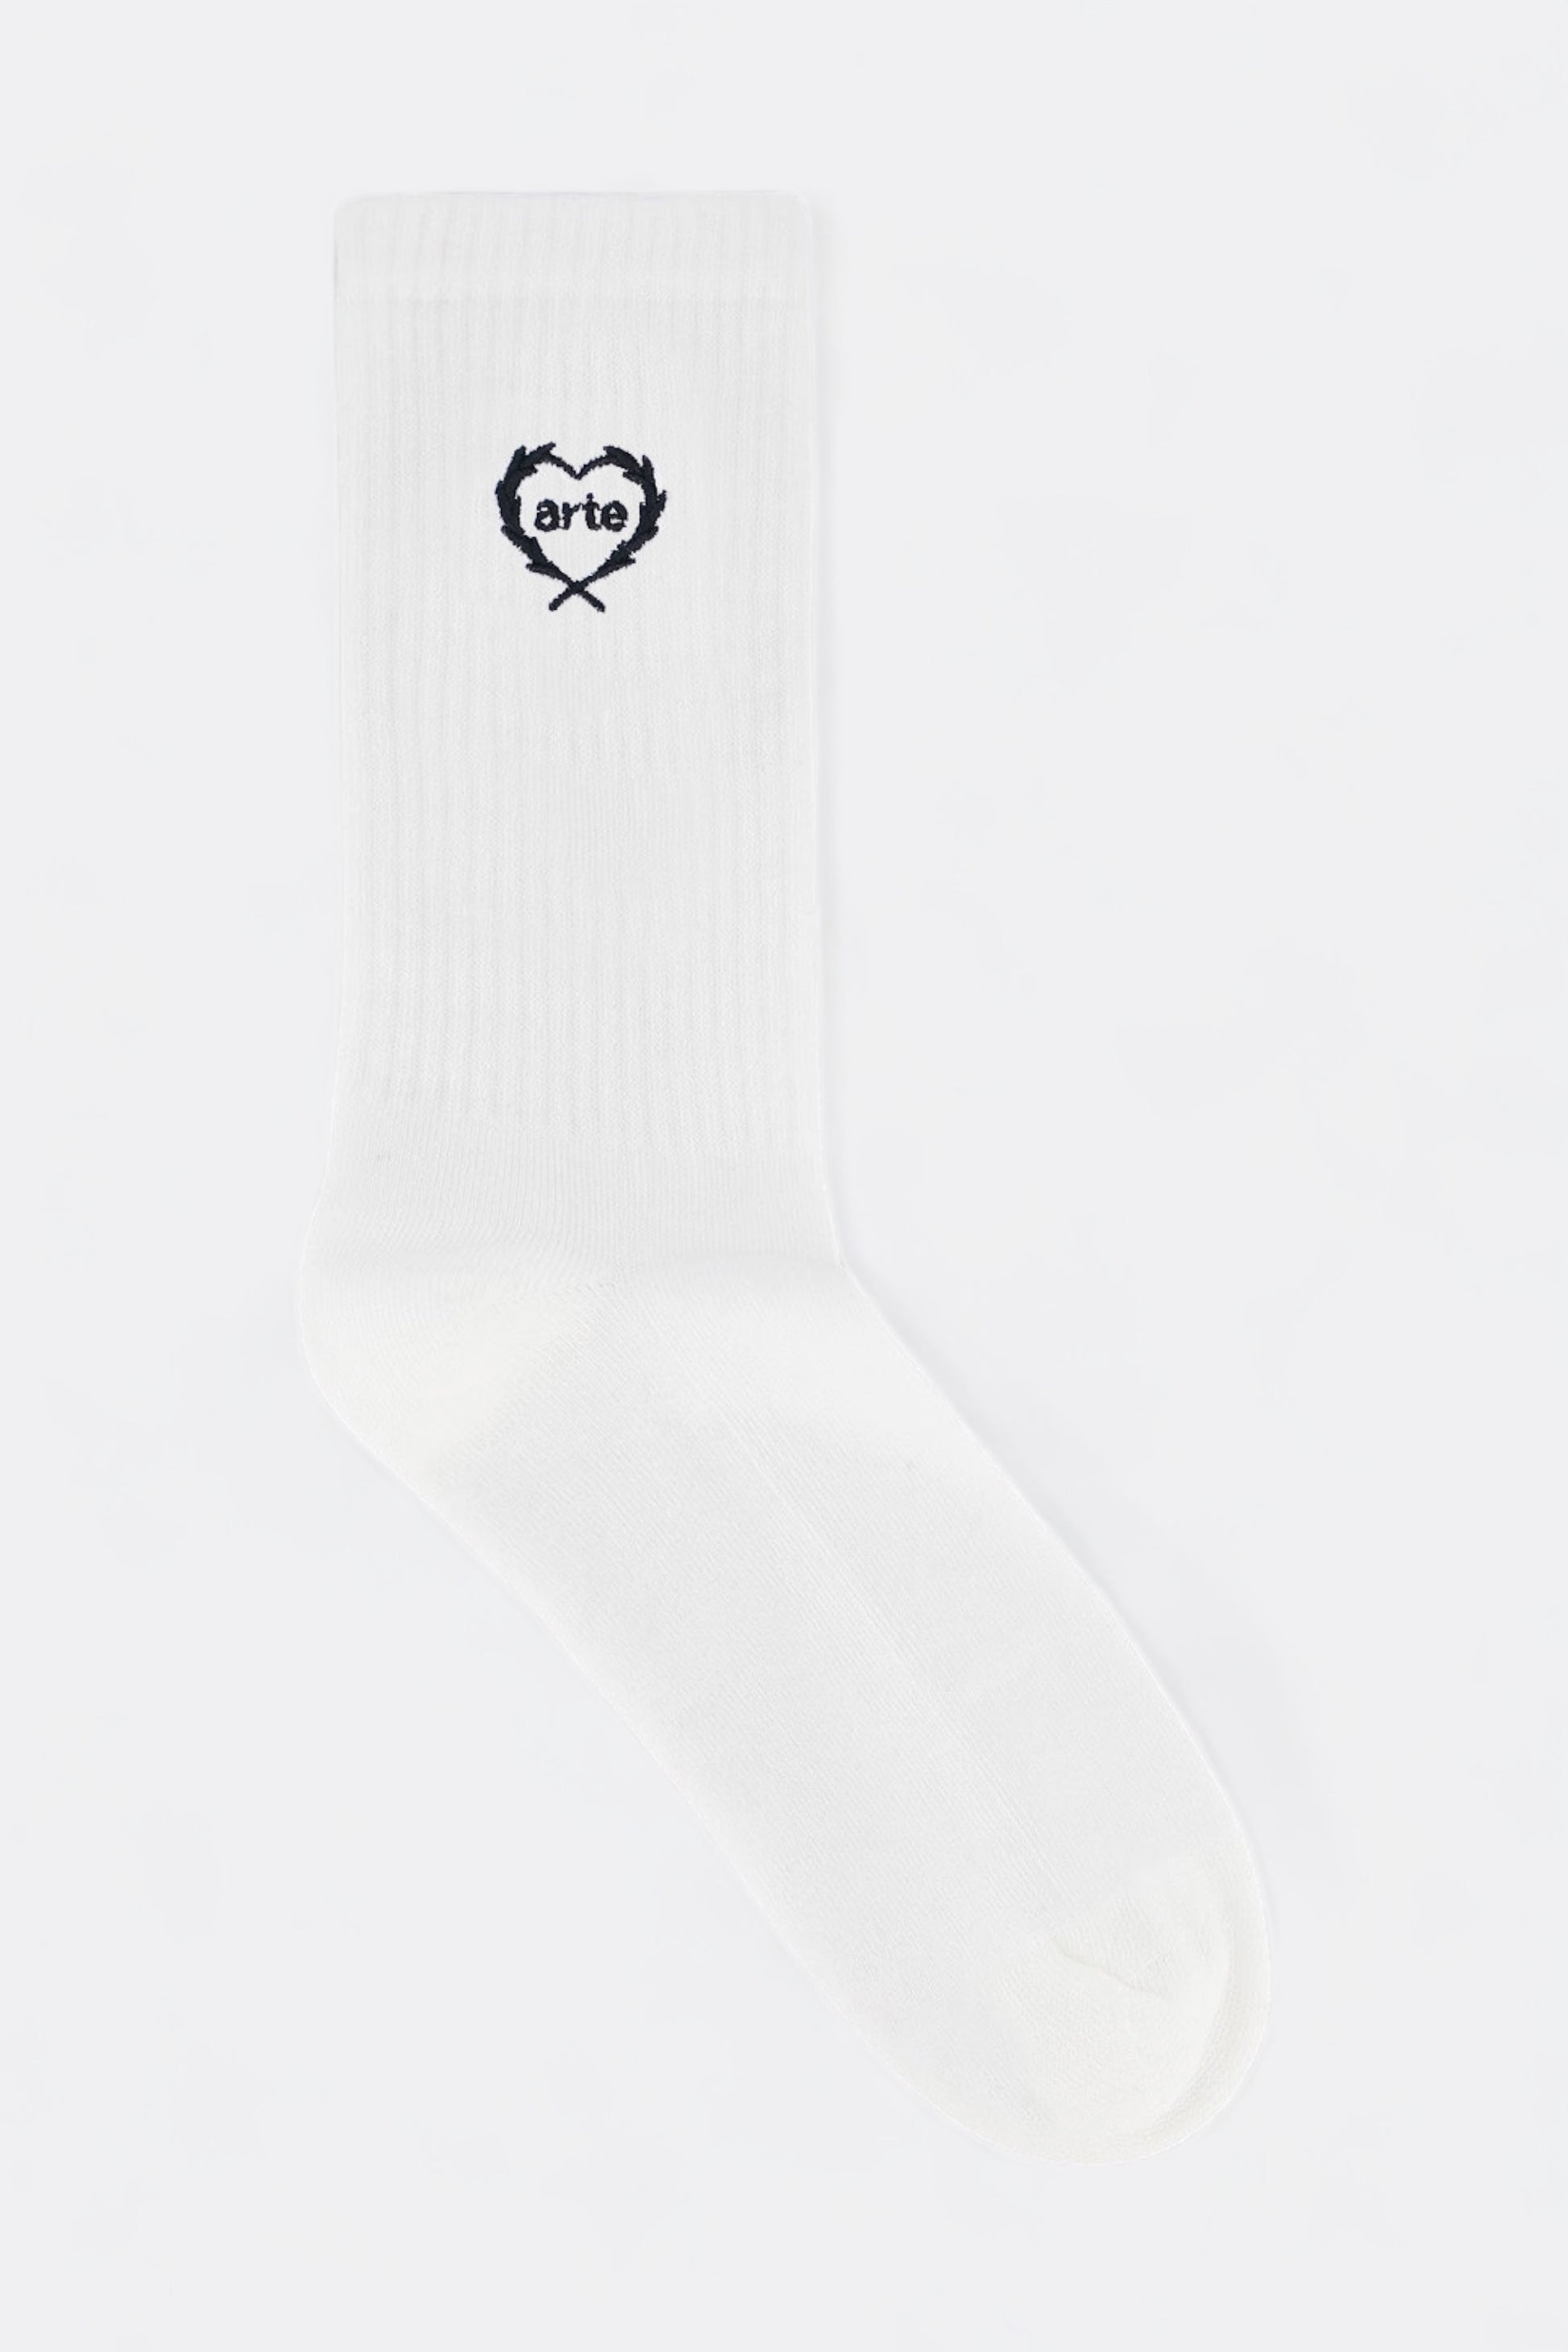 Arte - Arte Small Heart Socks (White)